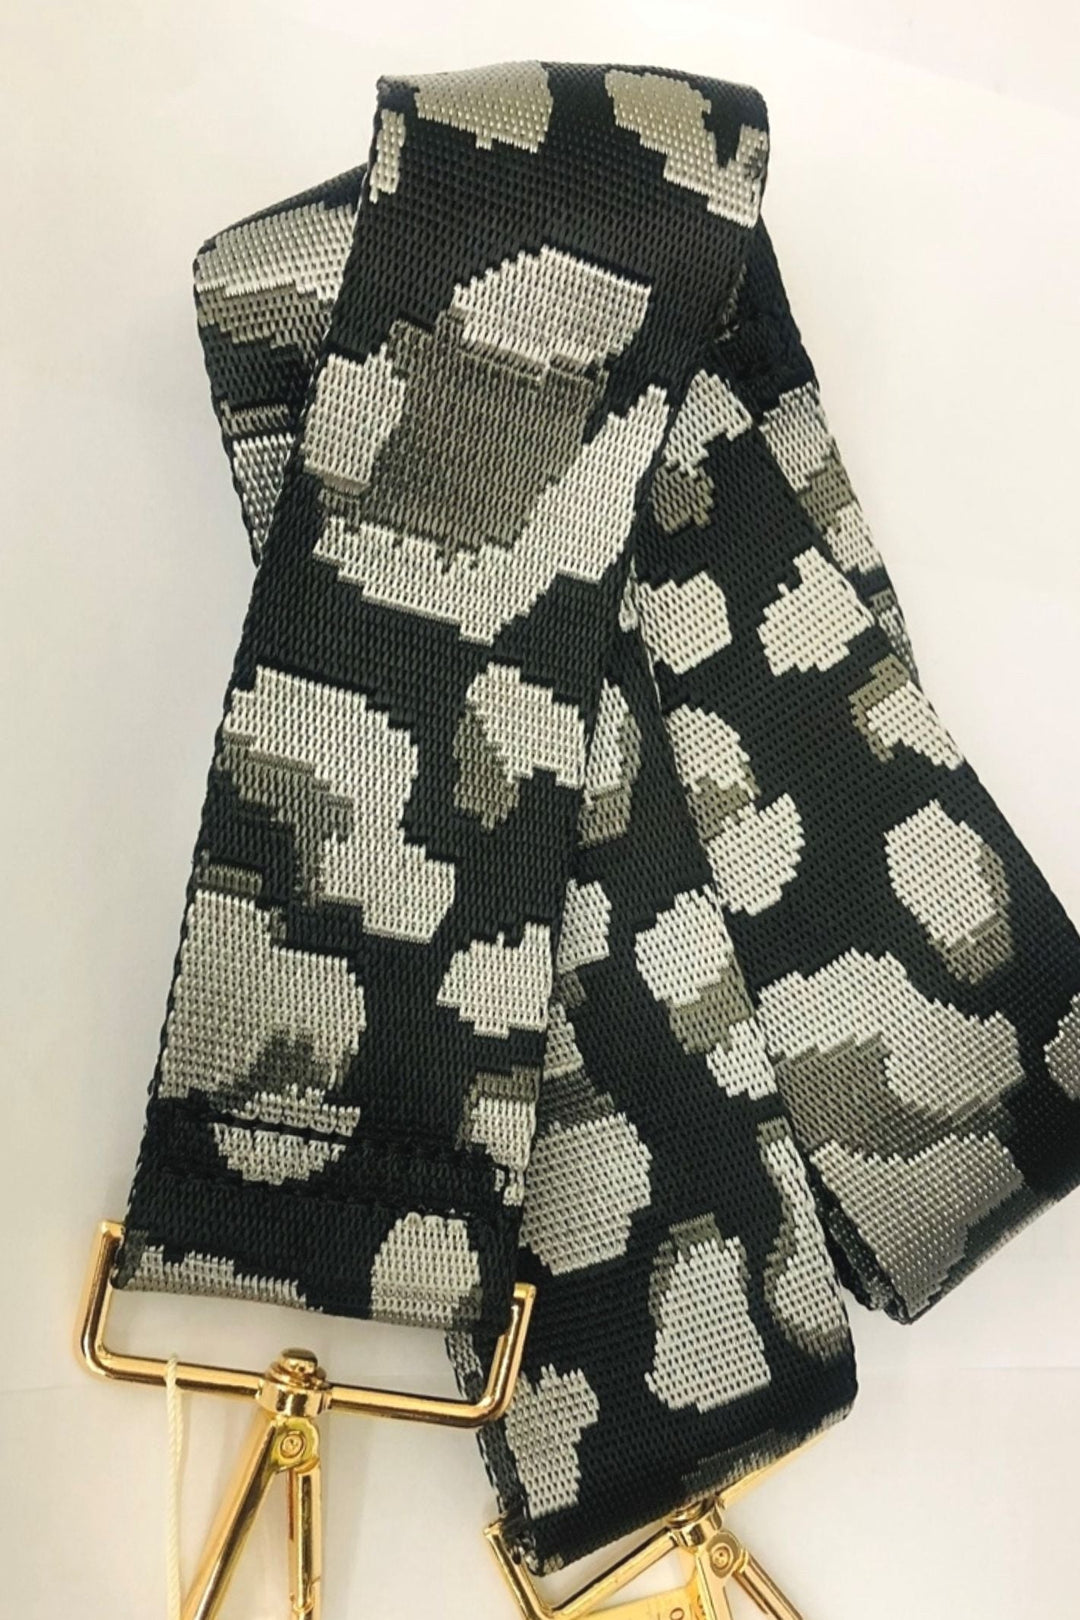 Leopard Print Interchangeable Bag Strap Black - Sugarplum Boutique